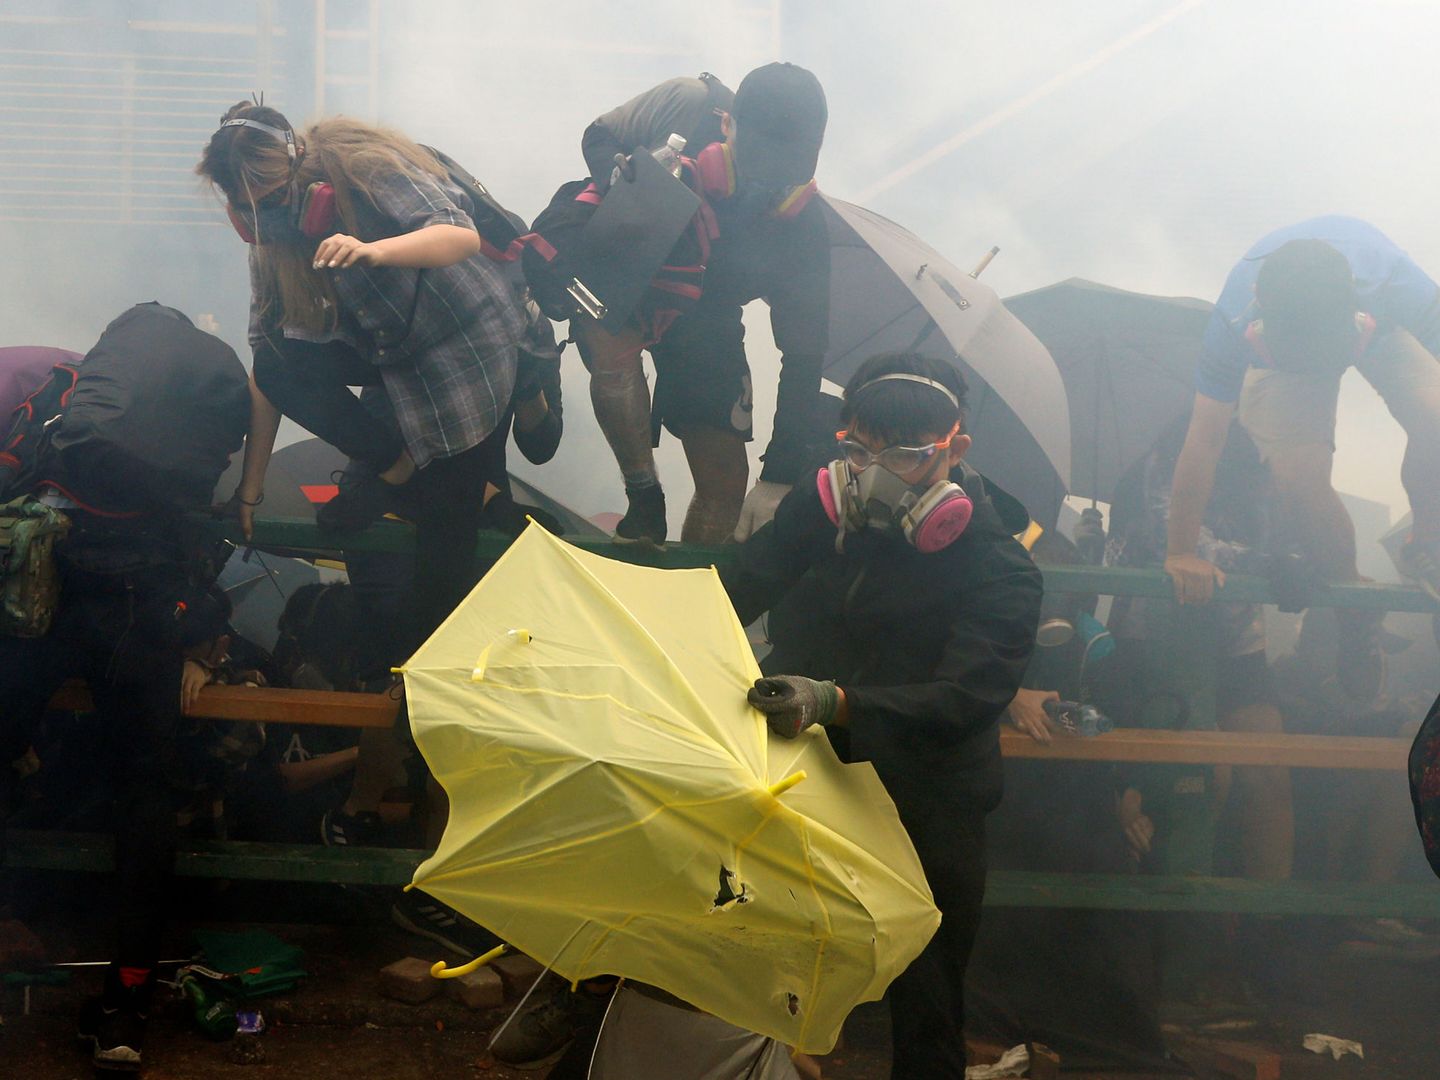 Lanzamiento de gas lacrimógeno contra los manifestantes. (Reuters)